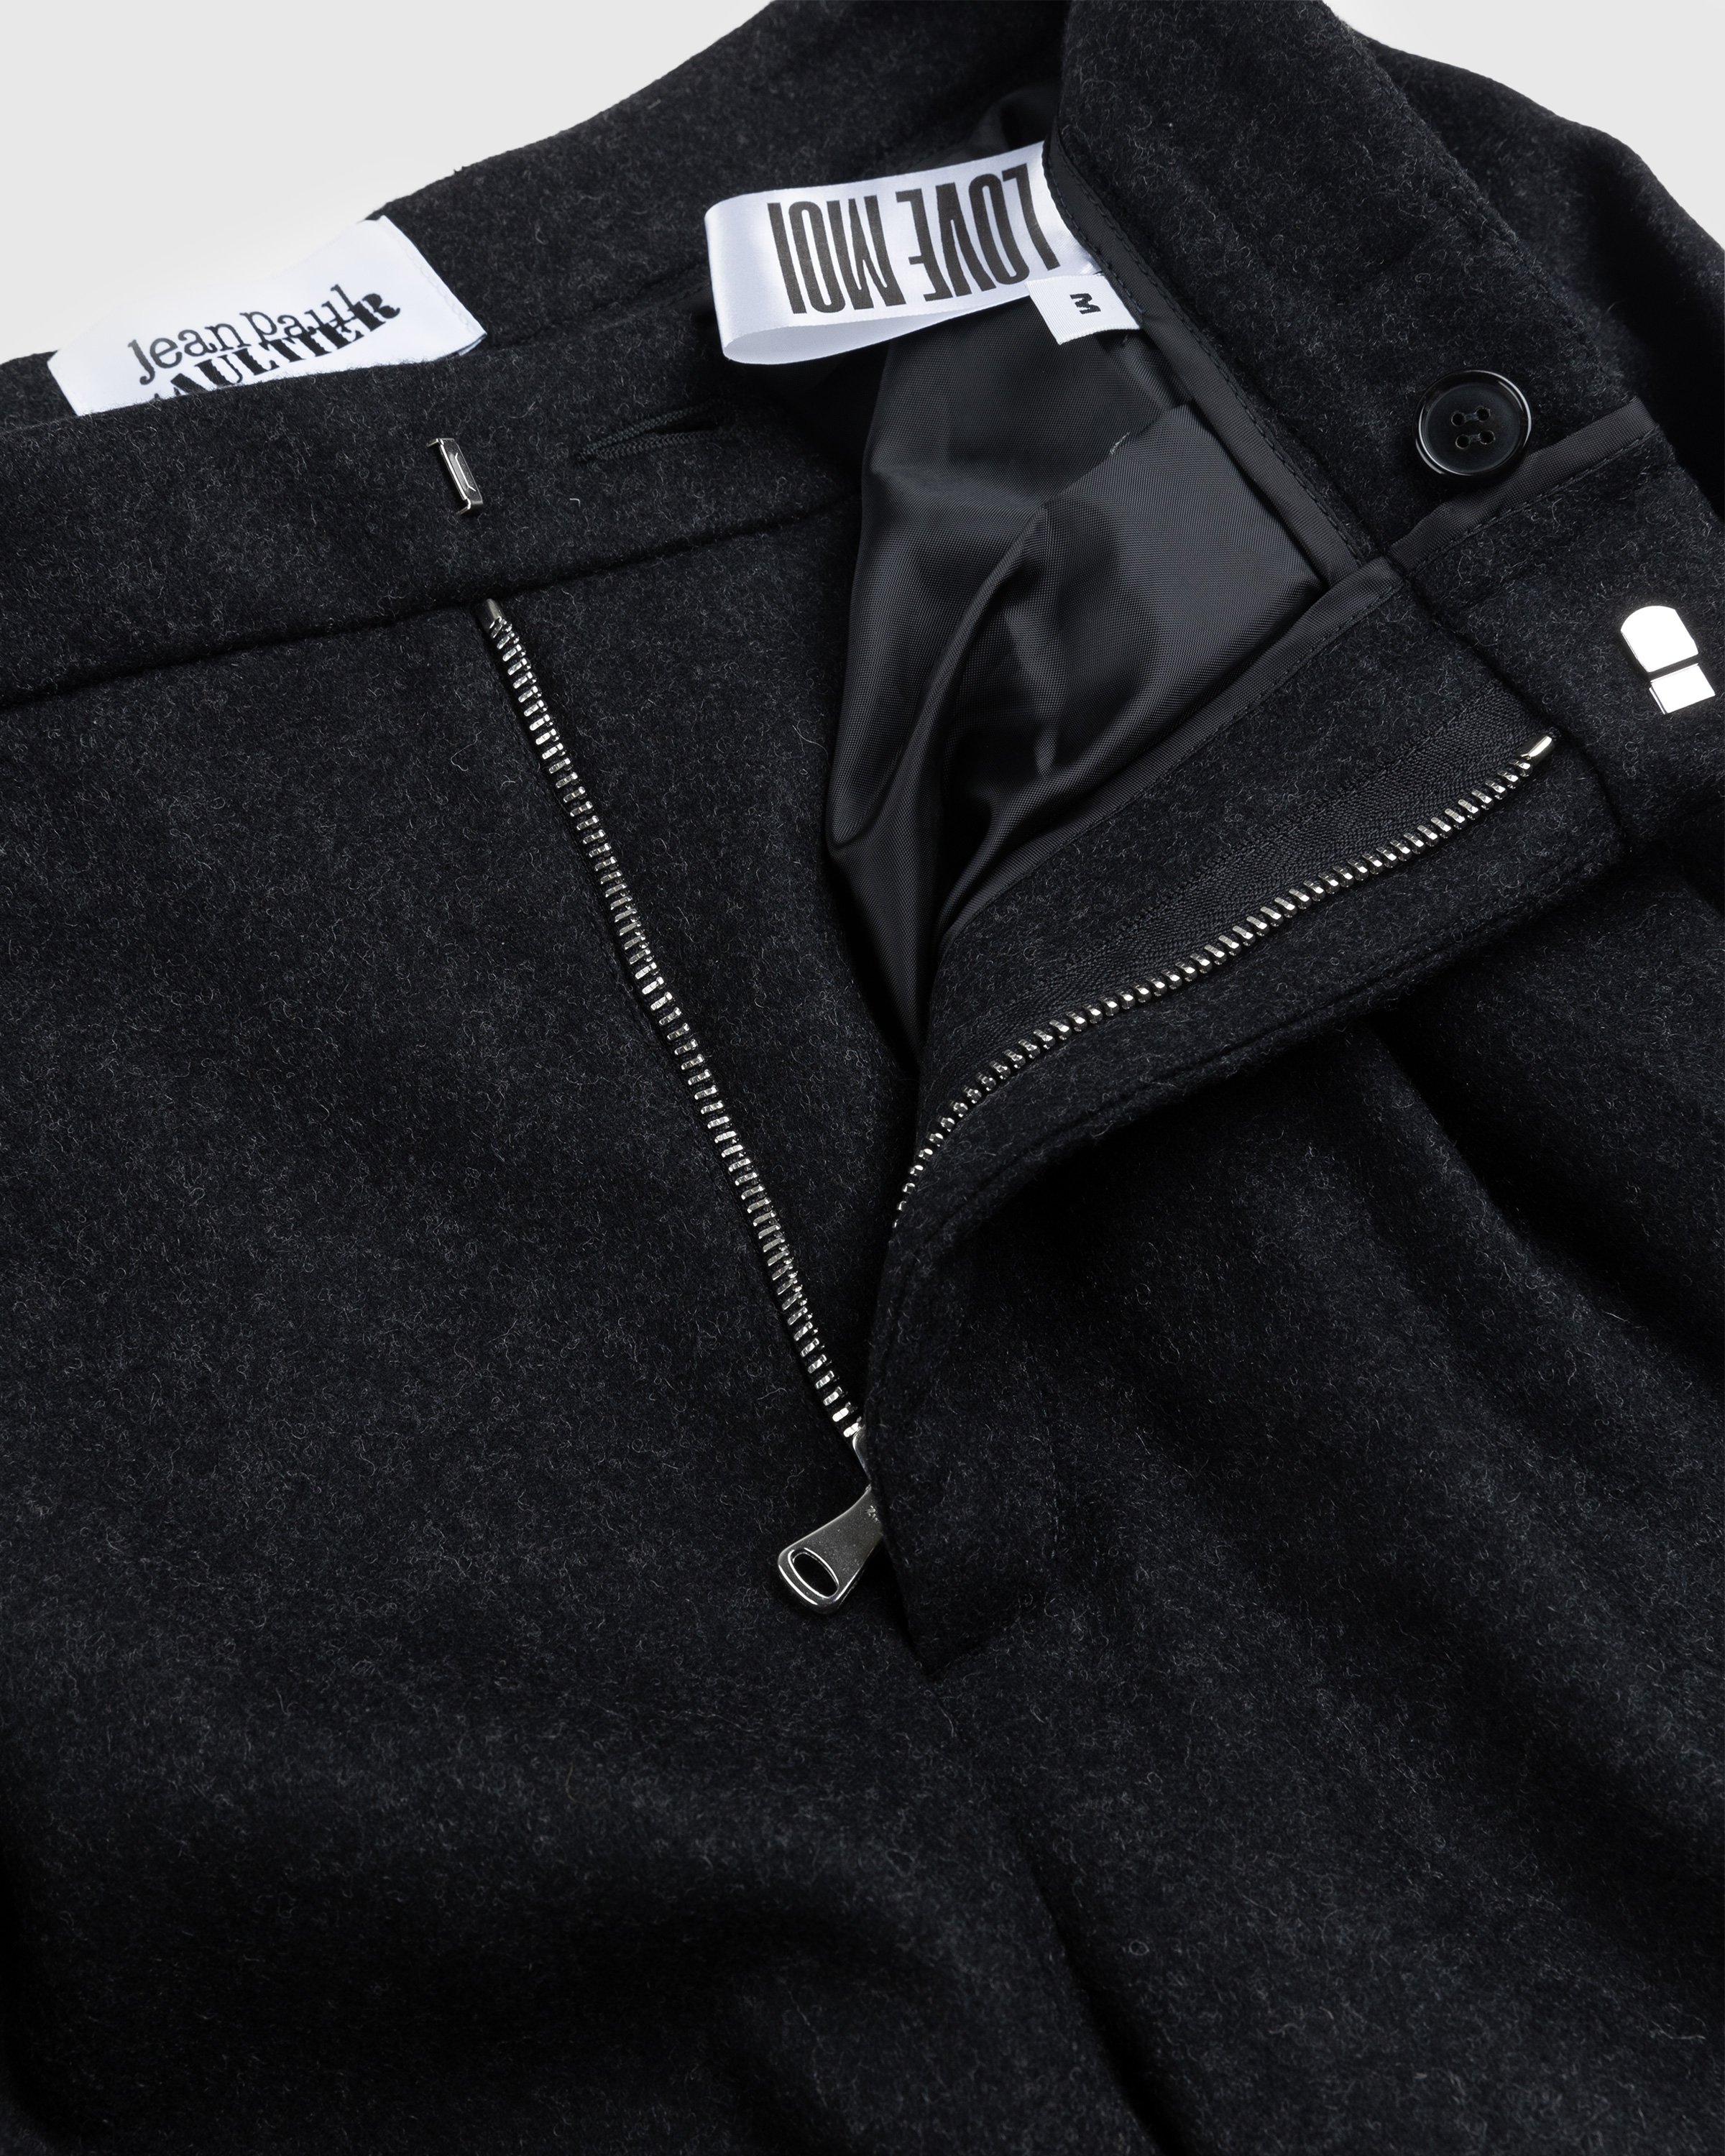 Jean Paul Gaultier - Felted Wool Suit Pants Dark Grey - Clothing - Grey - Image 7